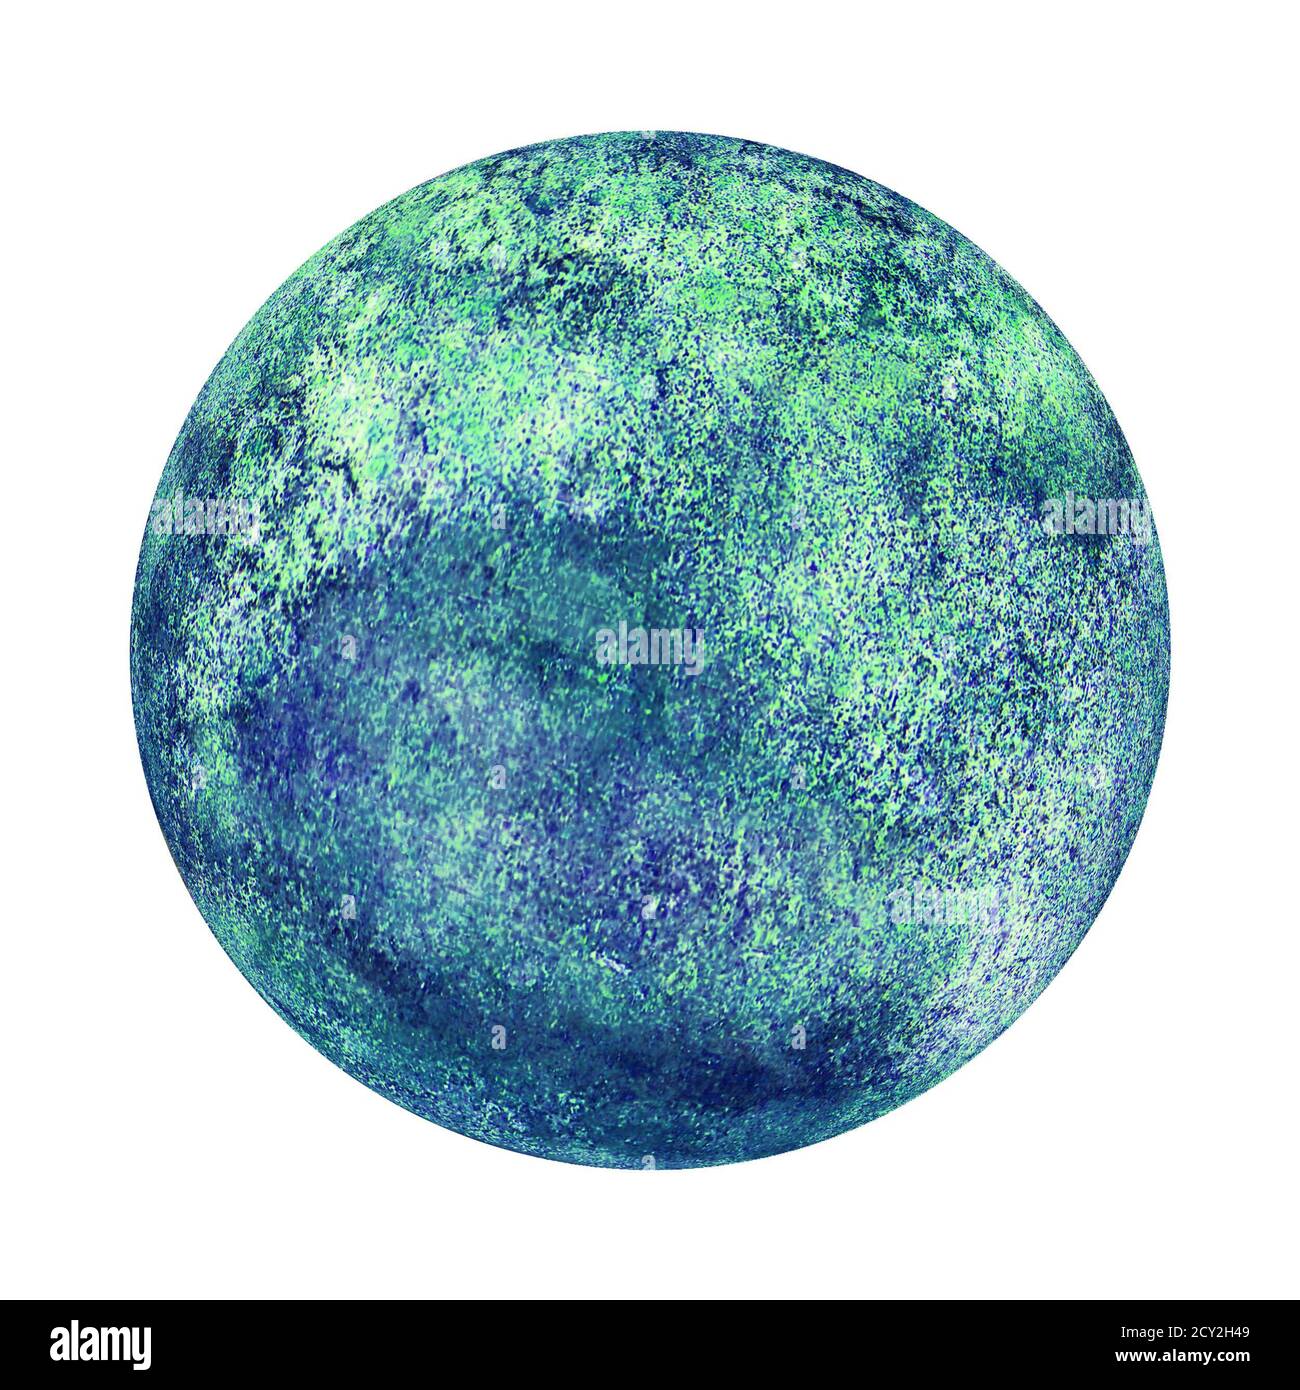 Erde Planeten Globus blau grün Aquarell isoliert auf weißem Hintergrund. Aquarell handgezeichnete Globus Illustration. Abstrakte Planetenscheibe. Ecologica Stockfoto